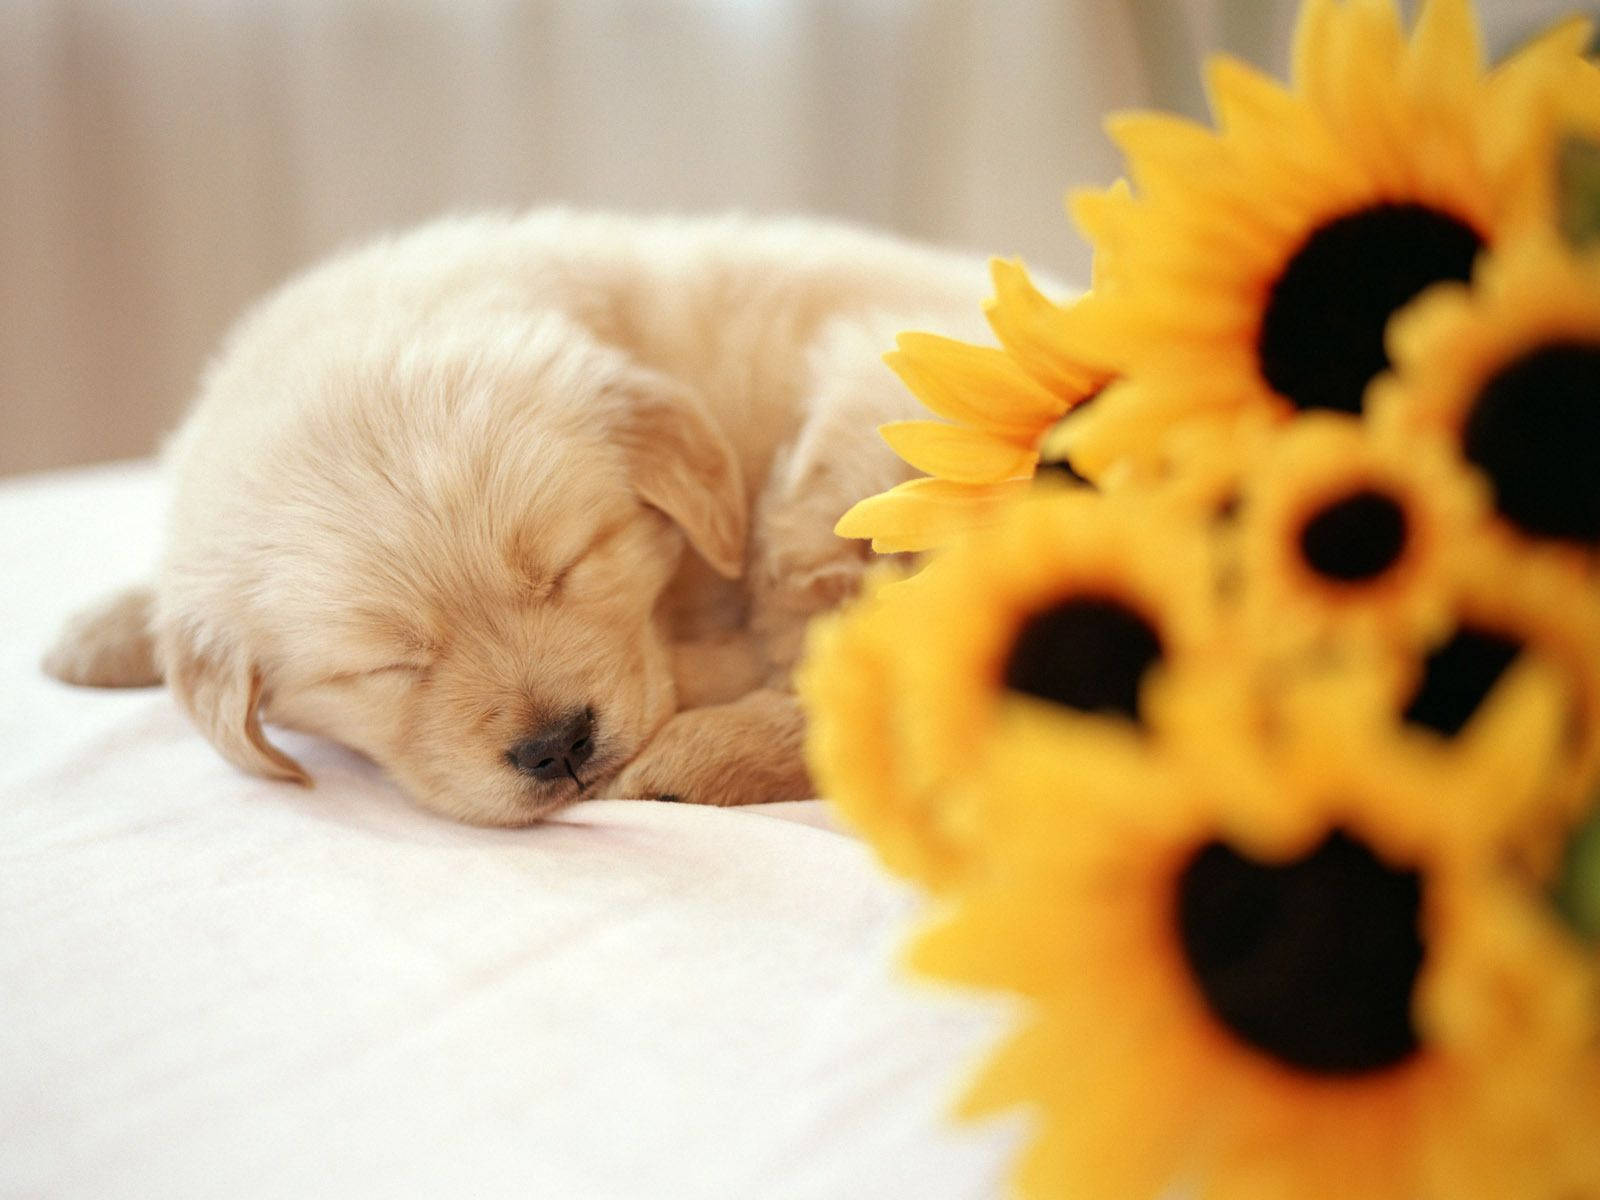 Sleeping Dog Near Sunflowers Background